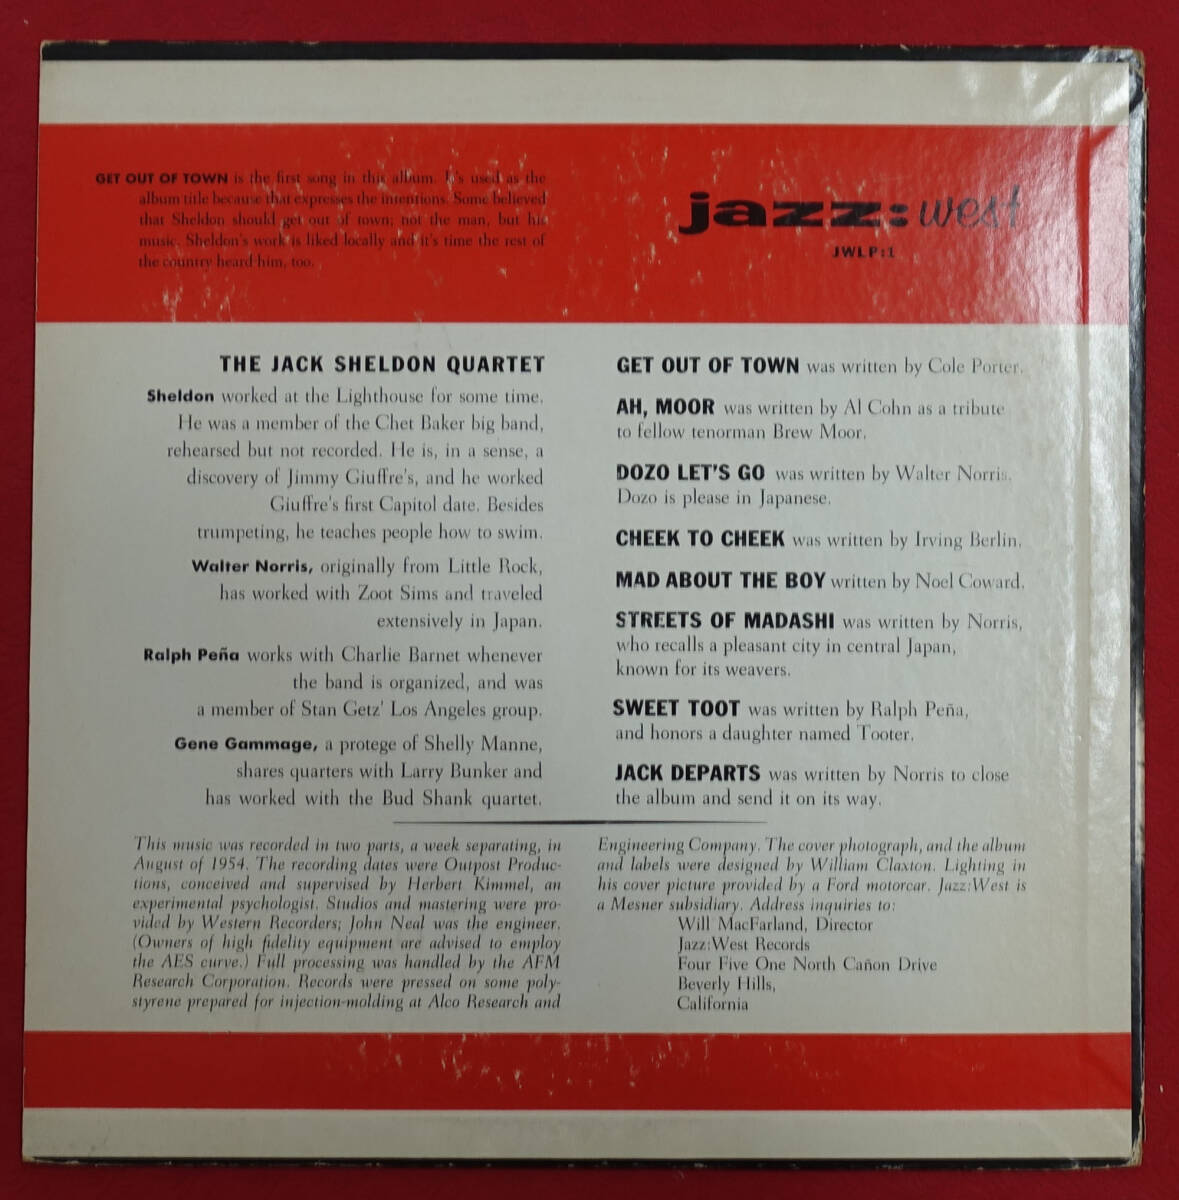 超レア! US Jazz: West JWLP 1 オリジナル Get Out of Town…/ The Jack Sheldon Quartet DG/Flat Edgeの画像2